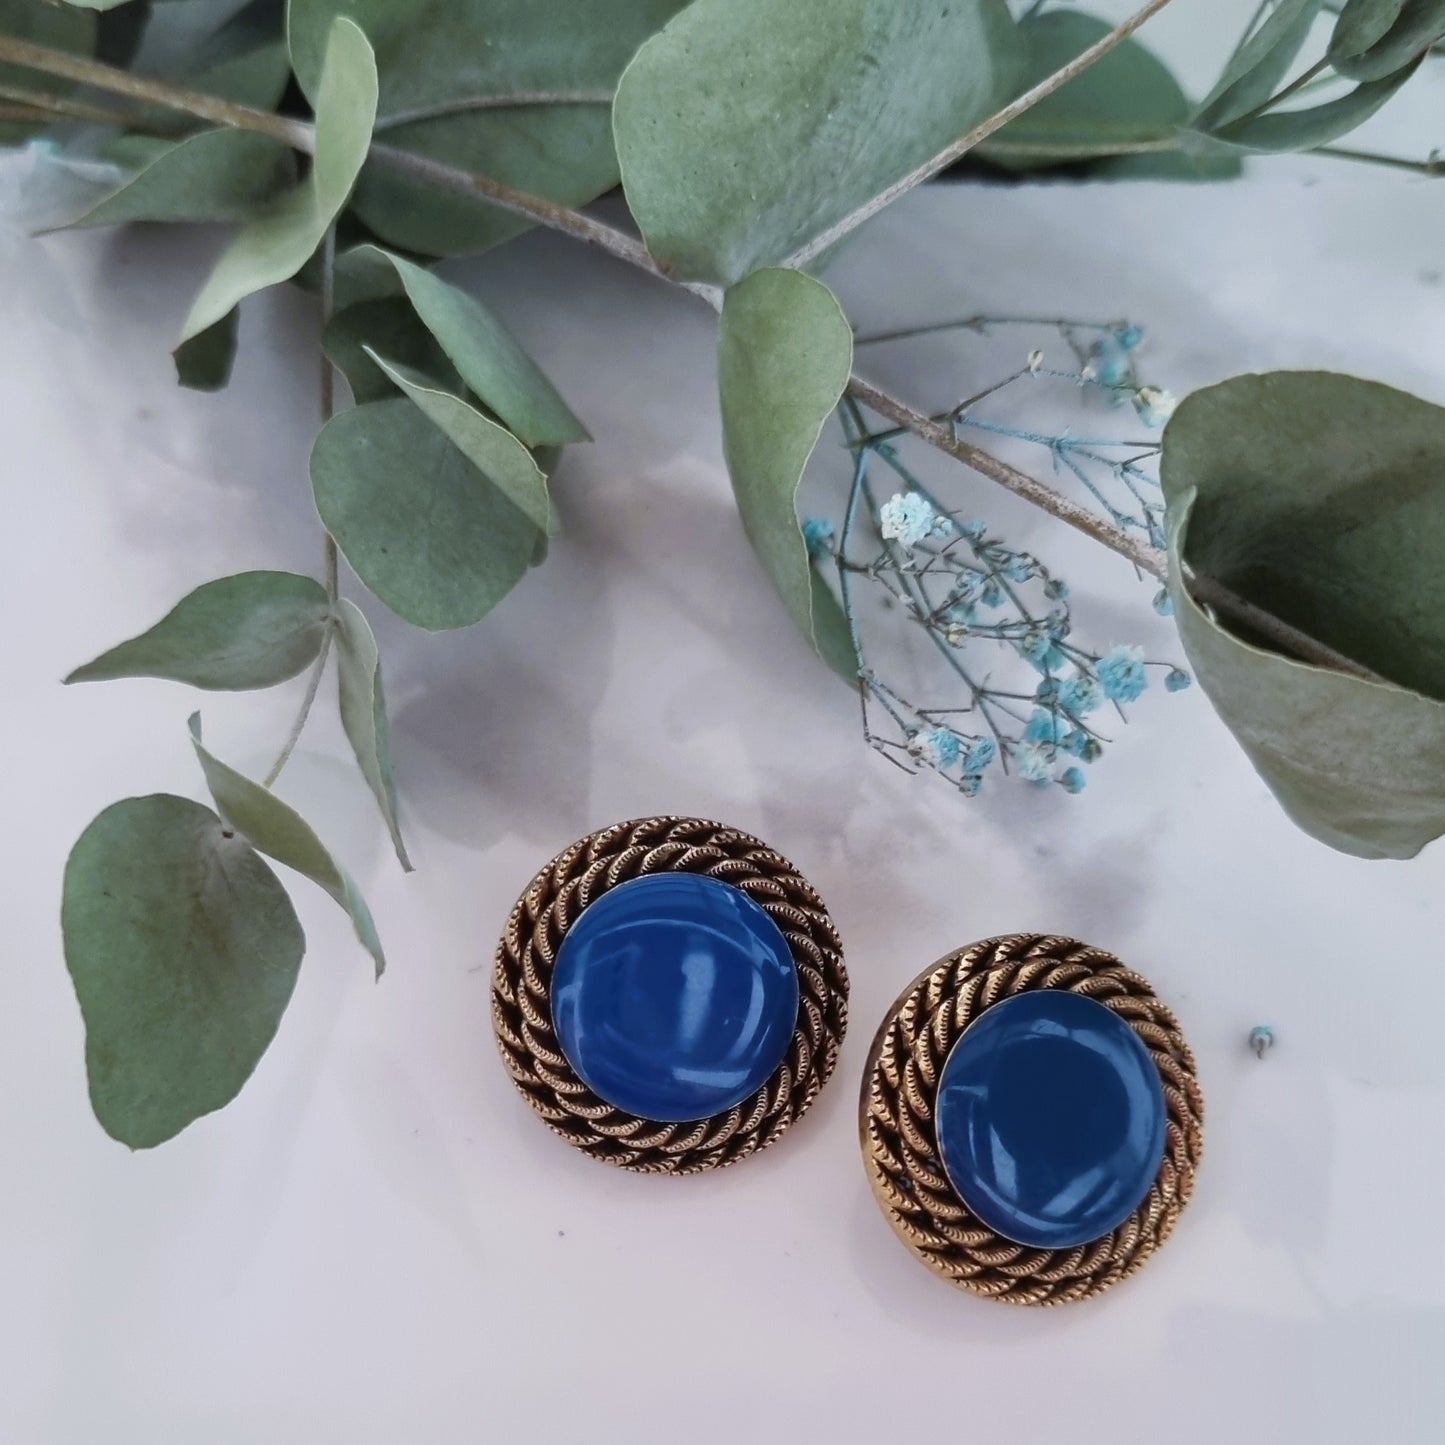 Vintage earrings - Blue